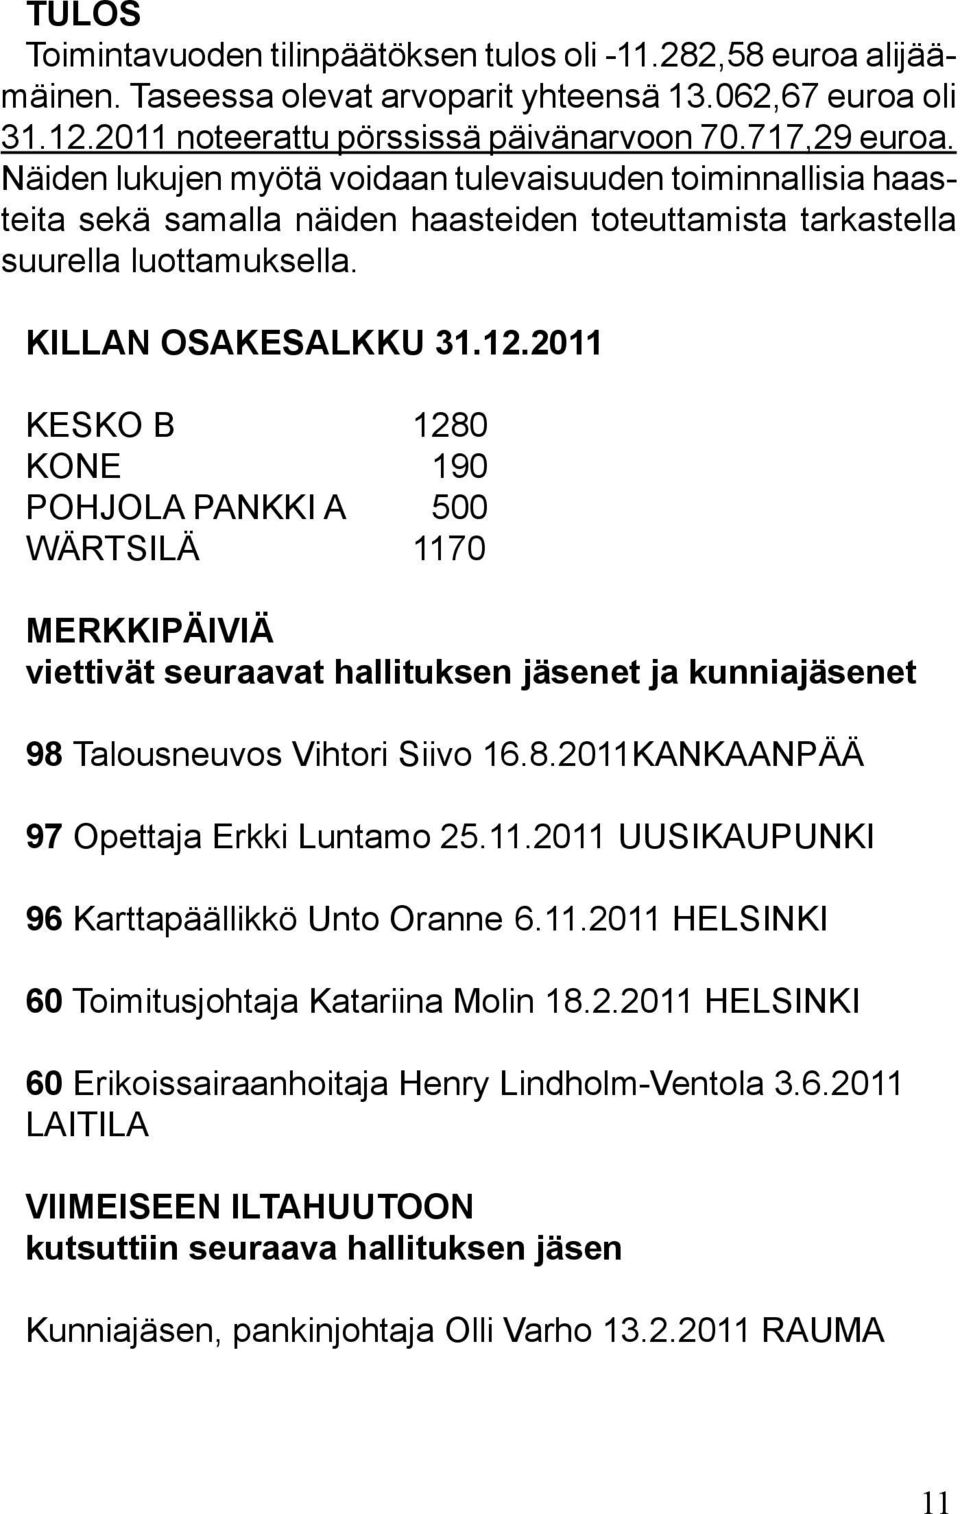 2011 KESKO B 1280 KONE 190 POHJOLA PANKKI A 500 WÄRTSILÄ 1170 MERKKIPÄIVIÄ viettivät seuraavat hallituksen jäsenet ja kunniajäsenet 98 Talousneuvos Vihtori Siivo 16.8.2011KANKAANPÄÄ 97 Opettaja Erkki Luntamo 25.